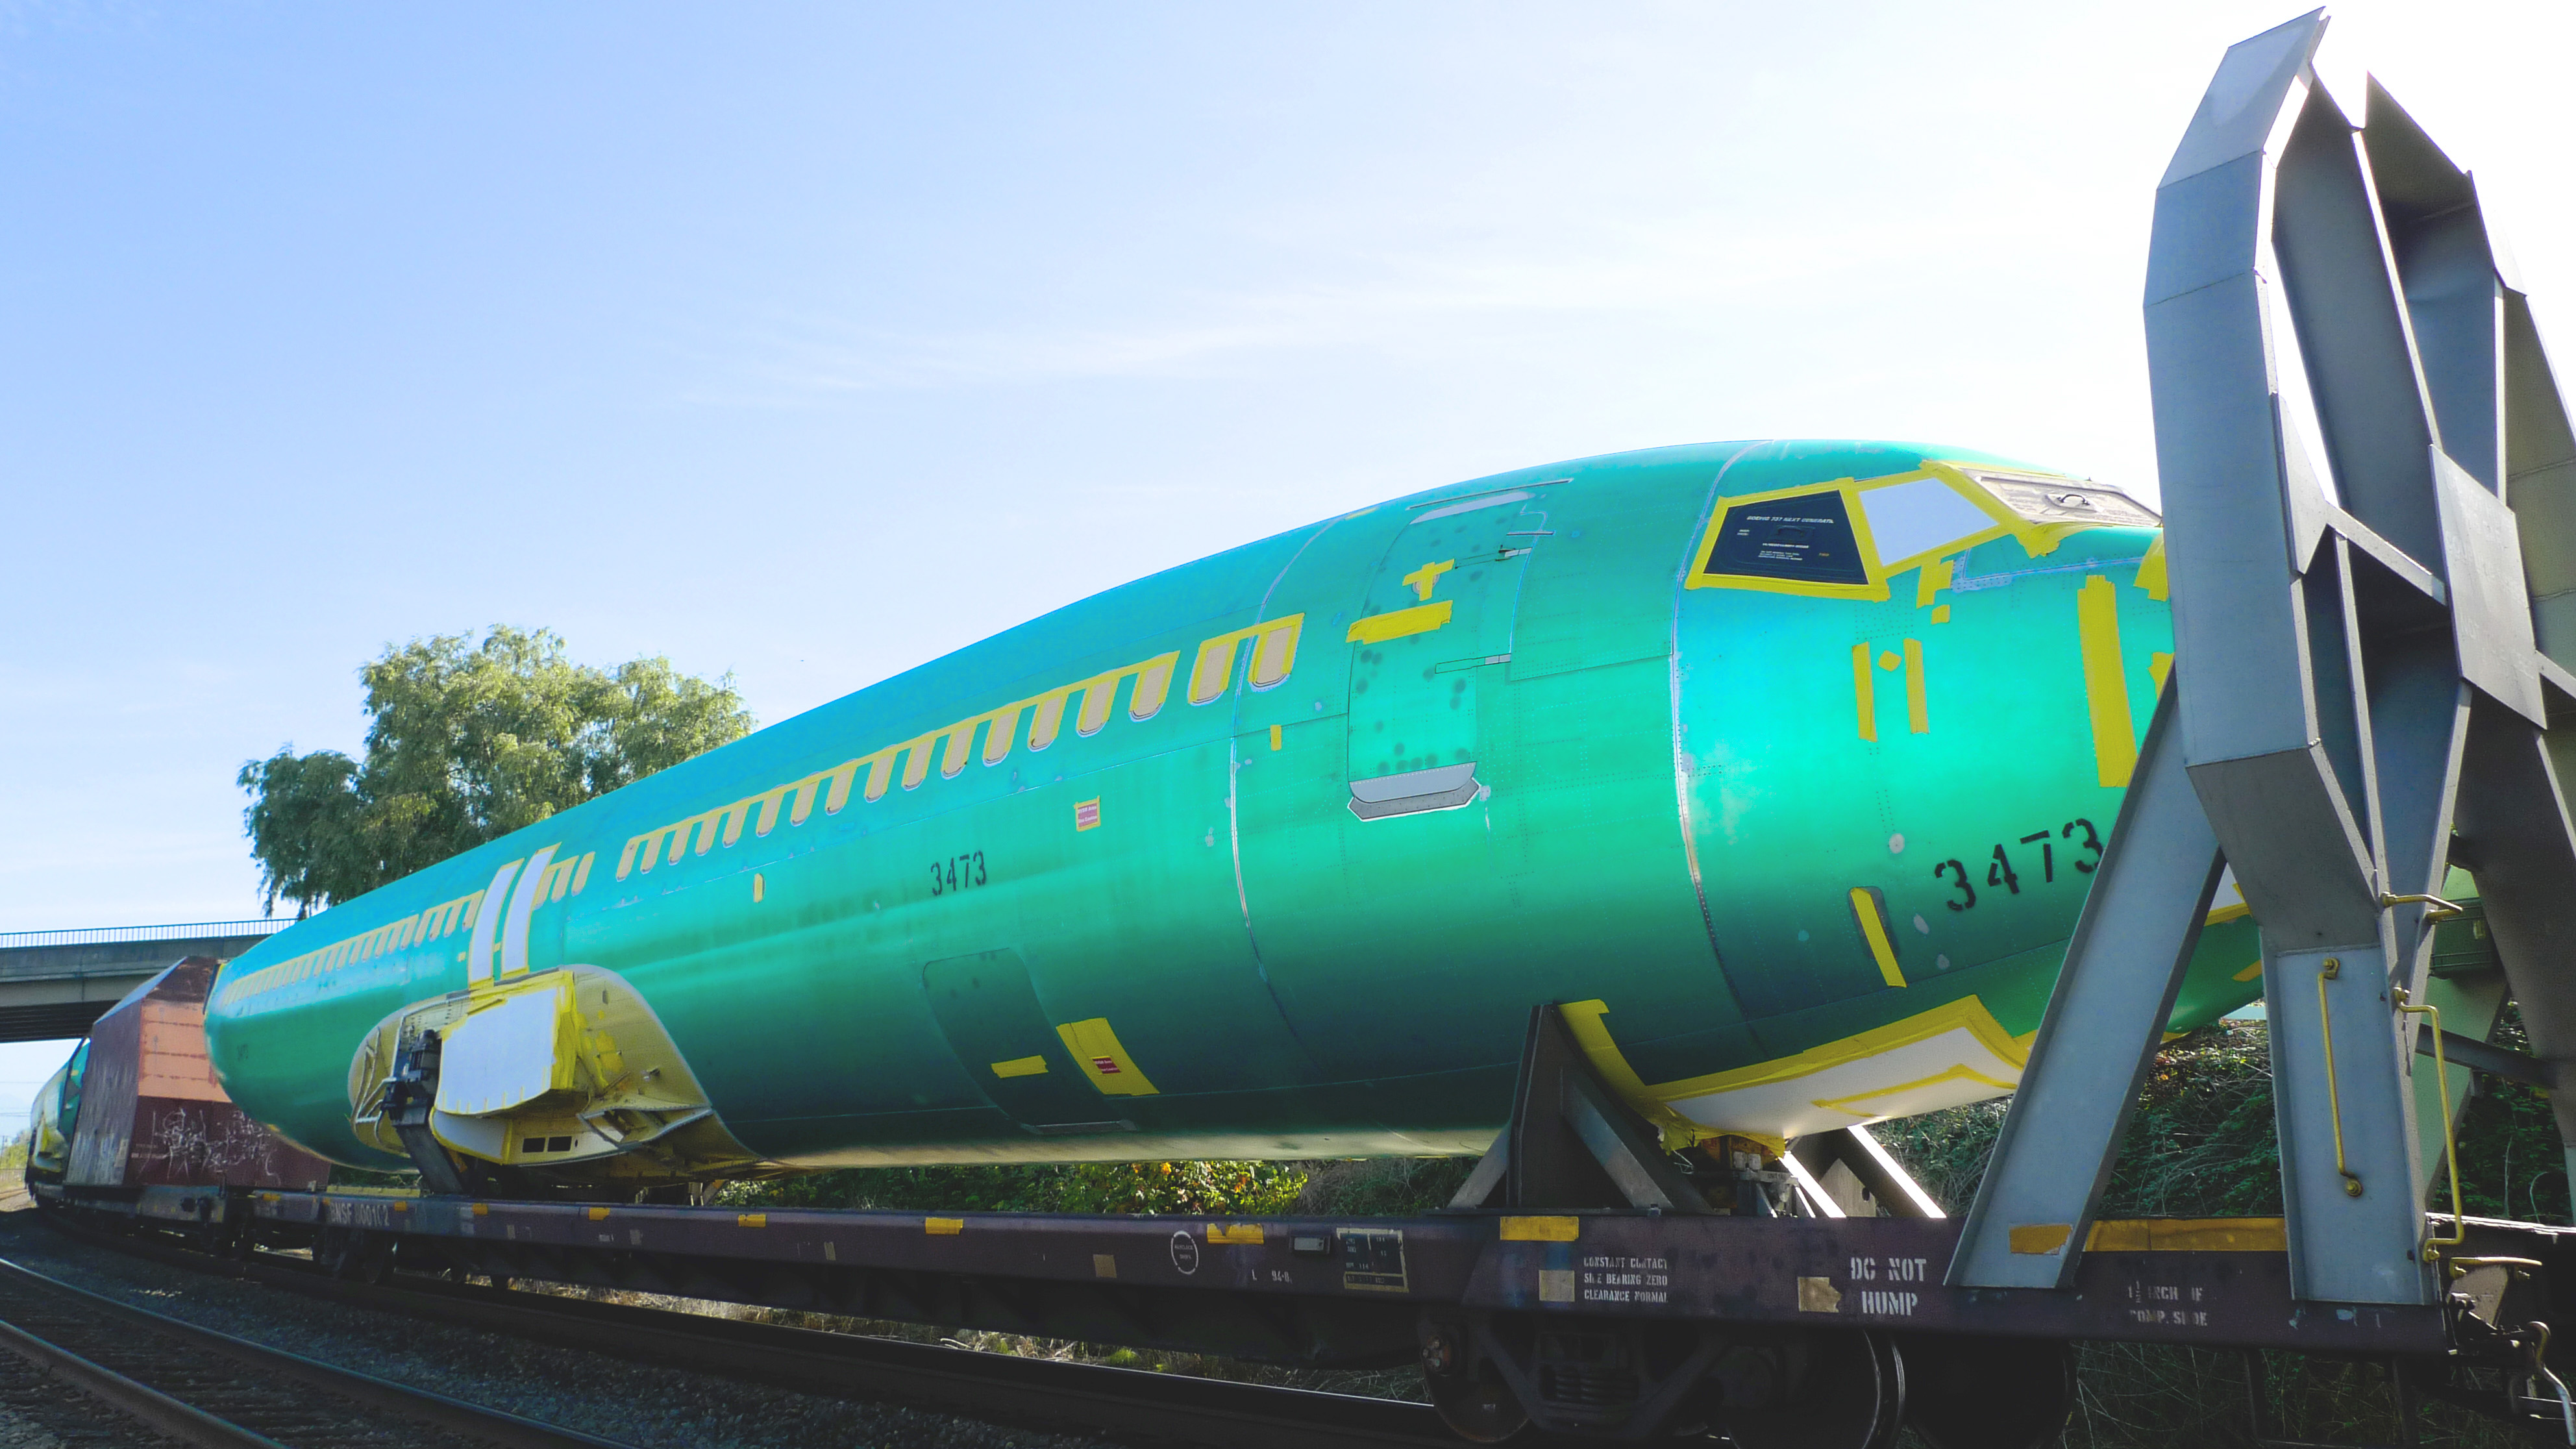 Boeing 737 fuselage train hull 3473